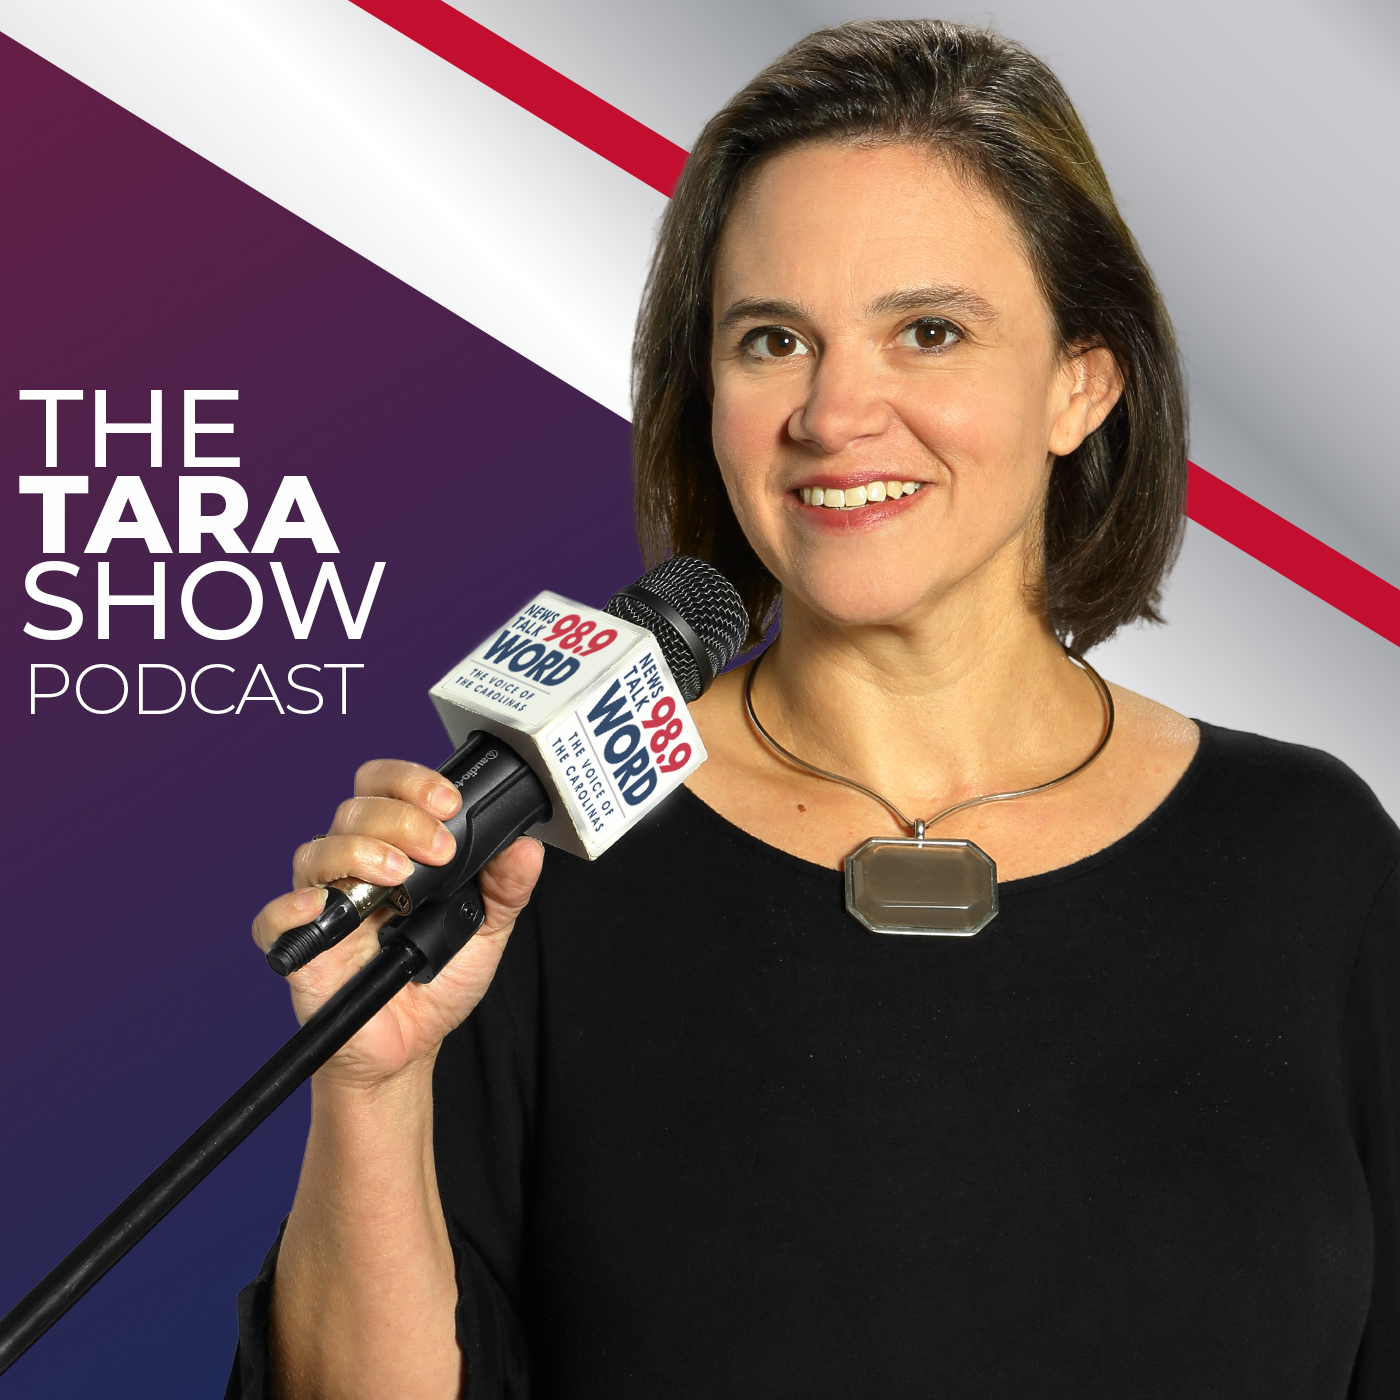 Hour 4: The Tara Show